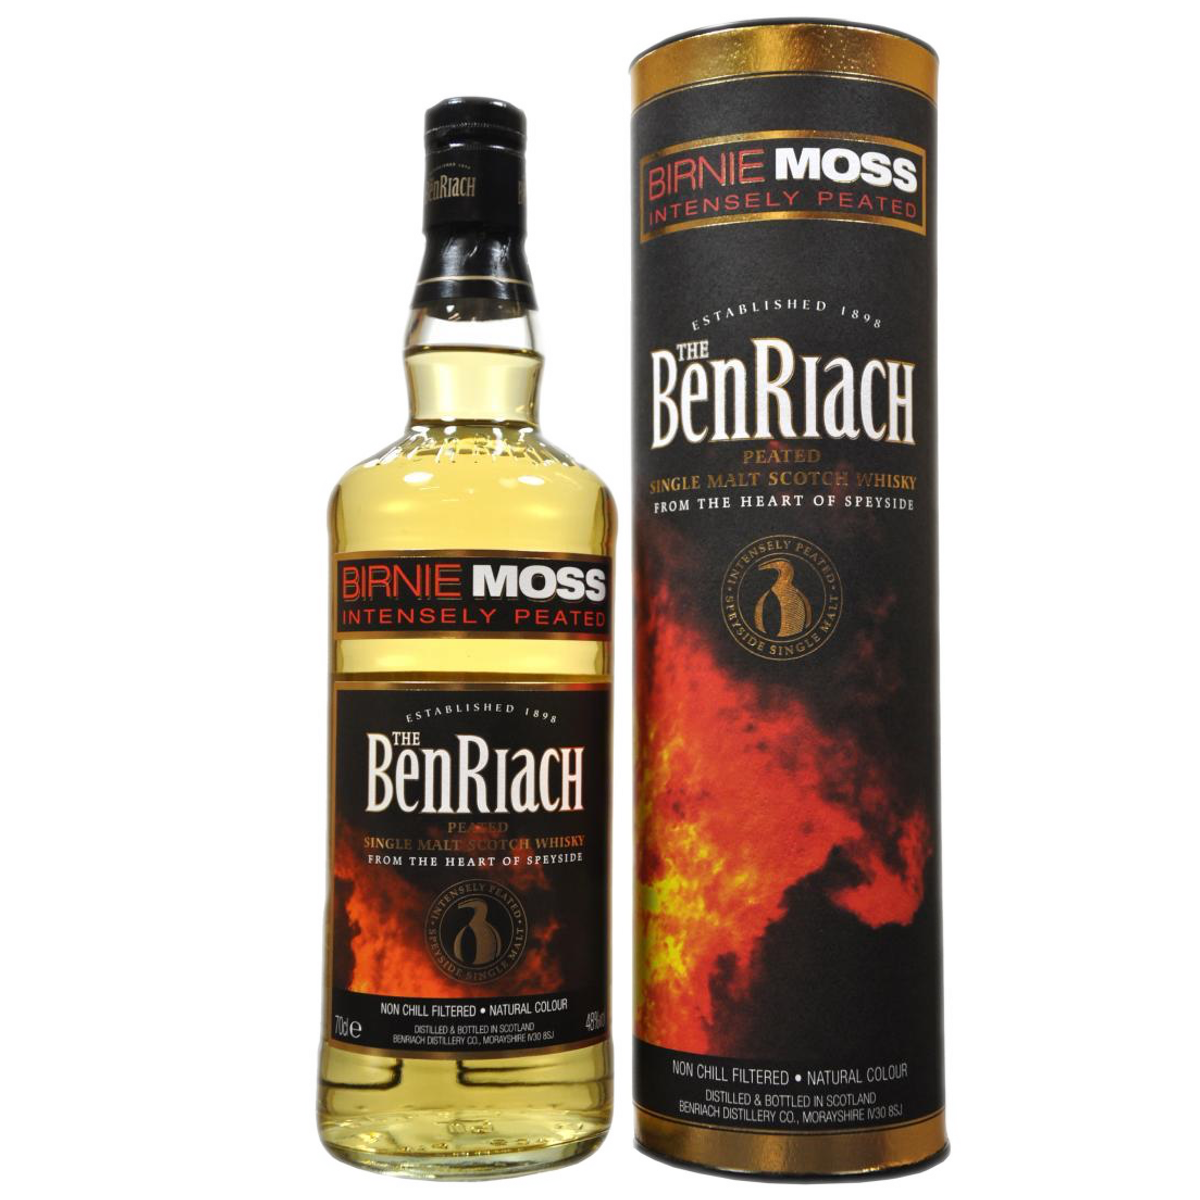 Whisky The BenRiach “Birnie Moss”